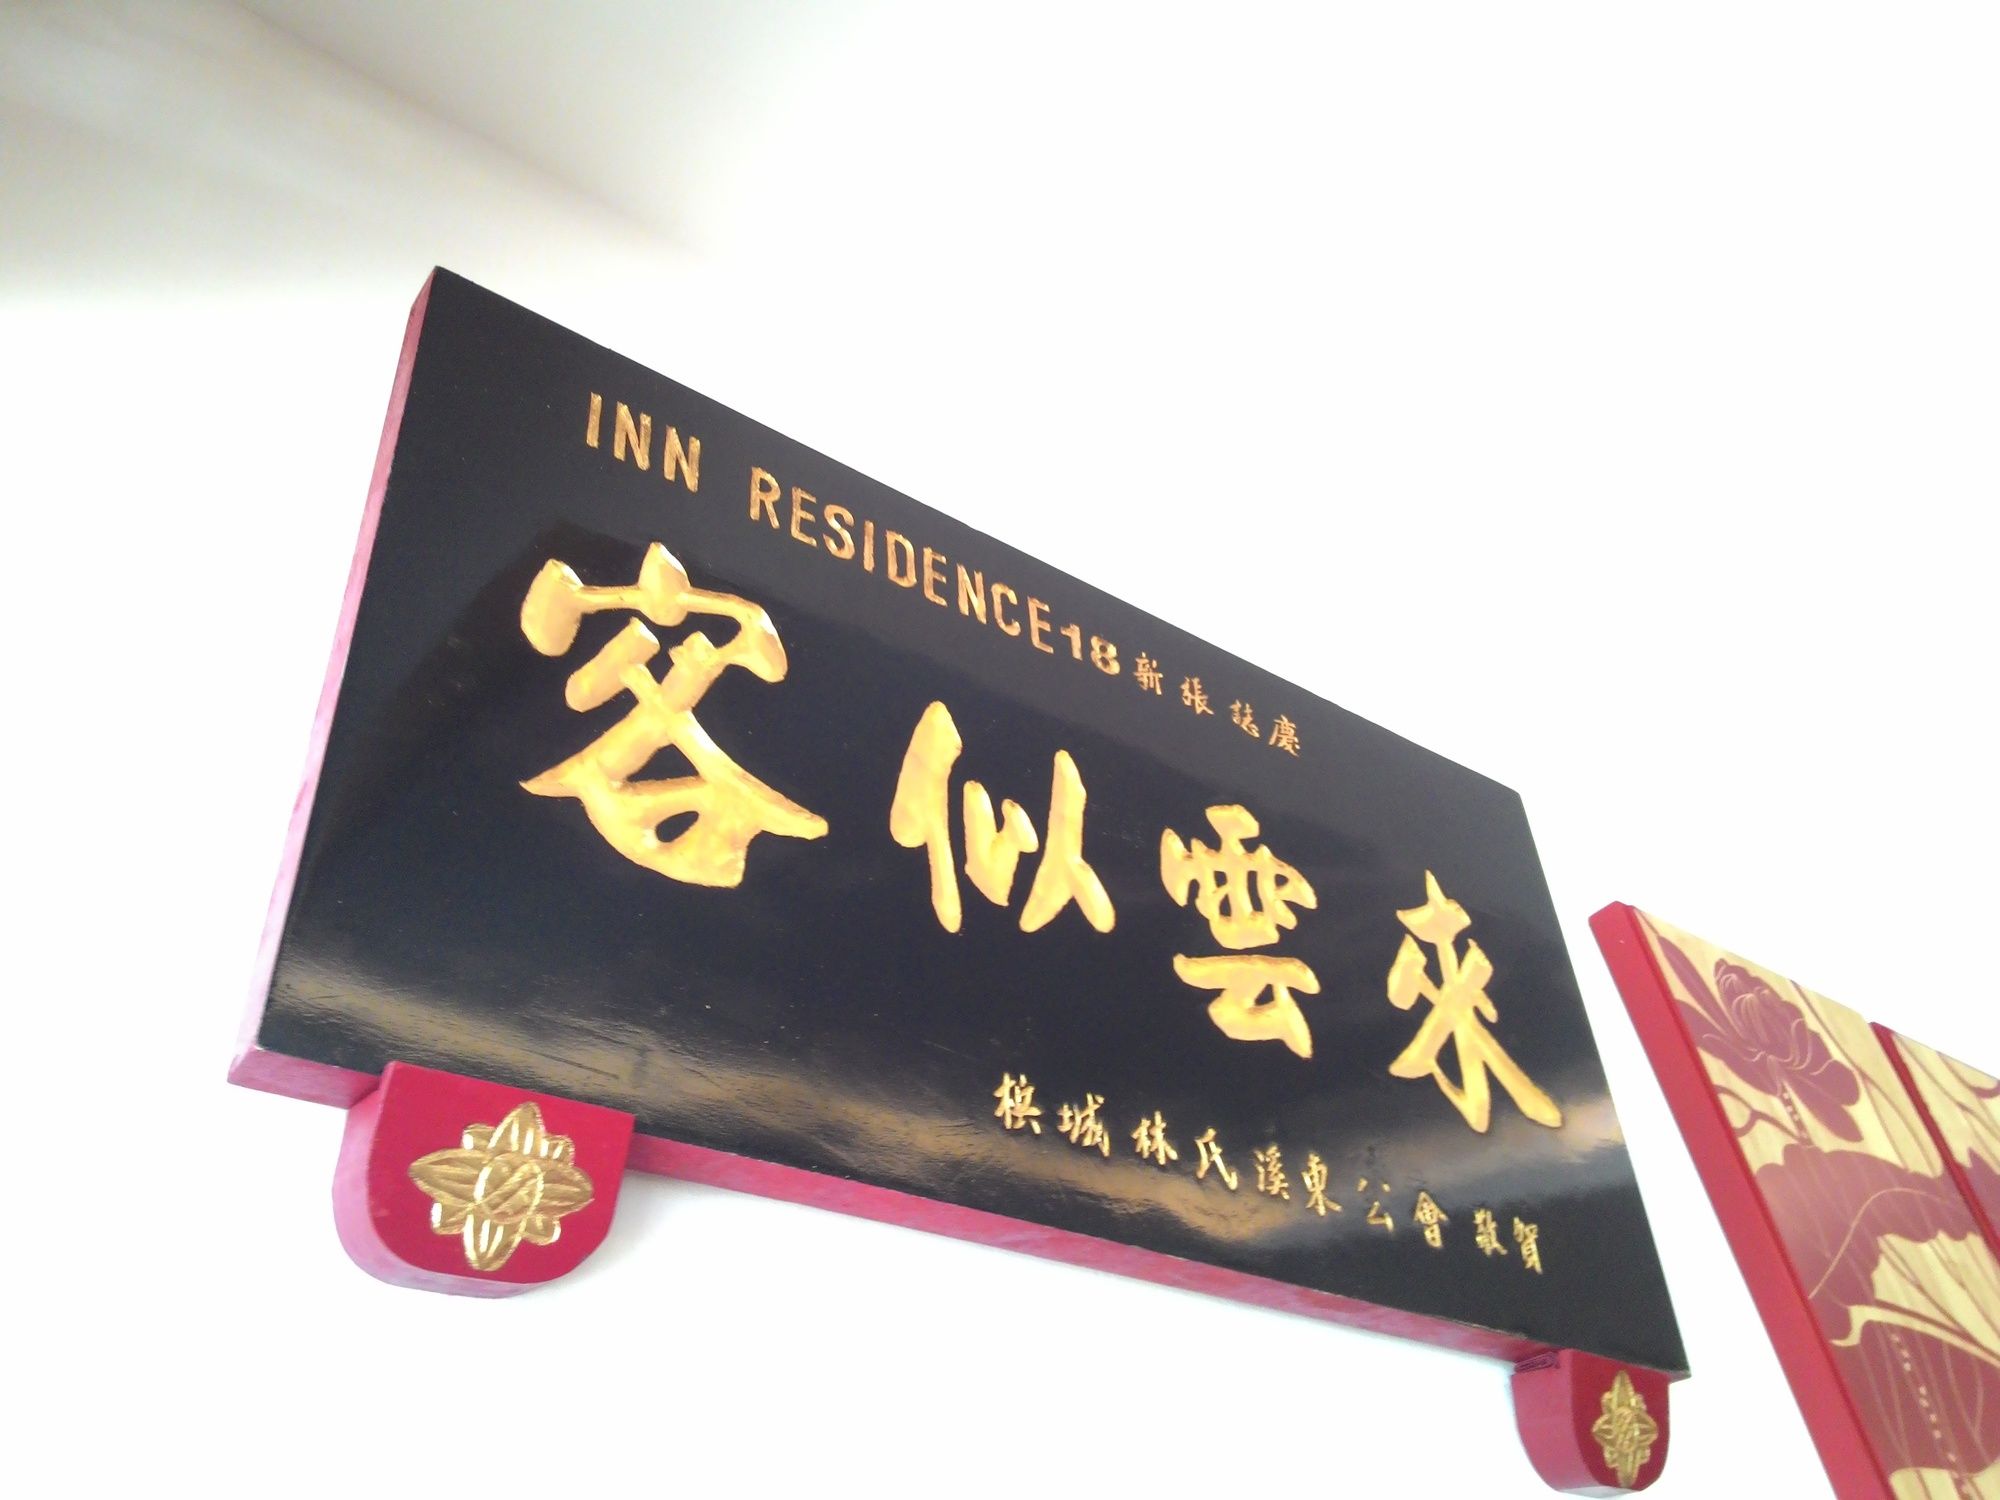 Inn Residence 18